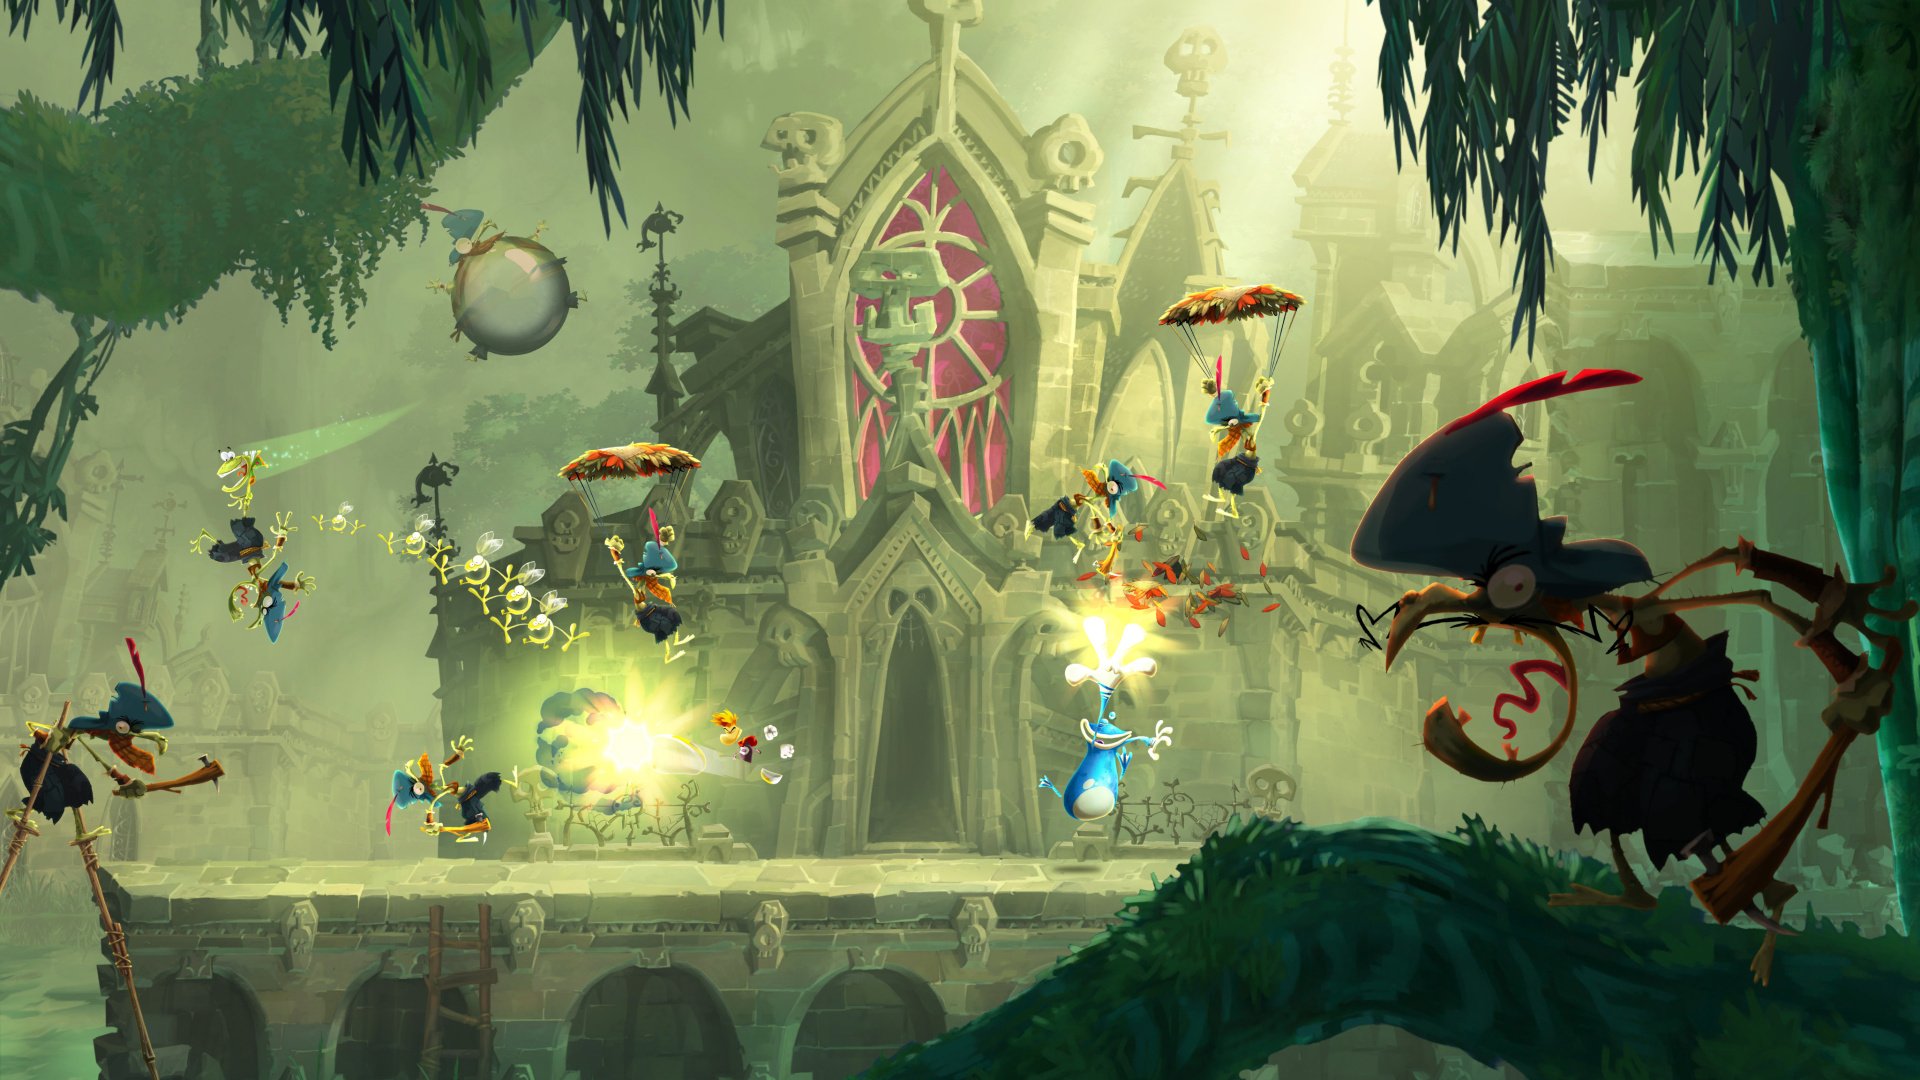 abces Uitsluiten Sluiting Rayman Legends Review (Wii U) | Nintendo Life